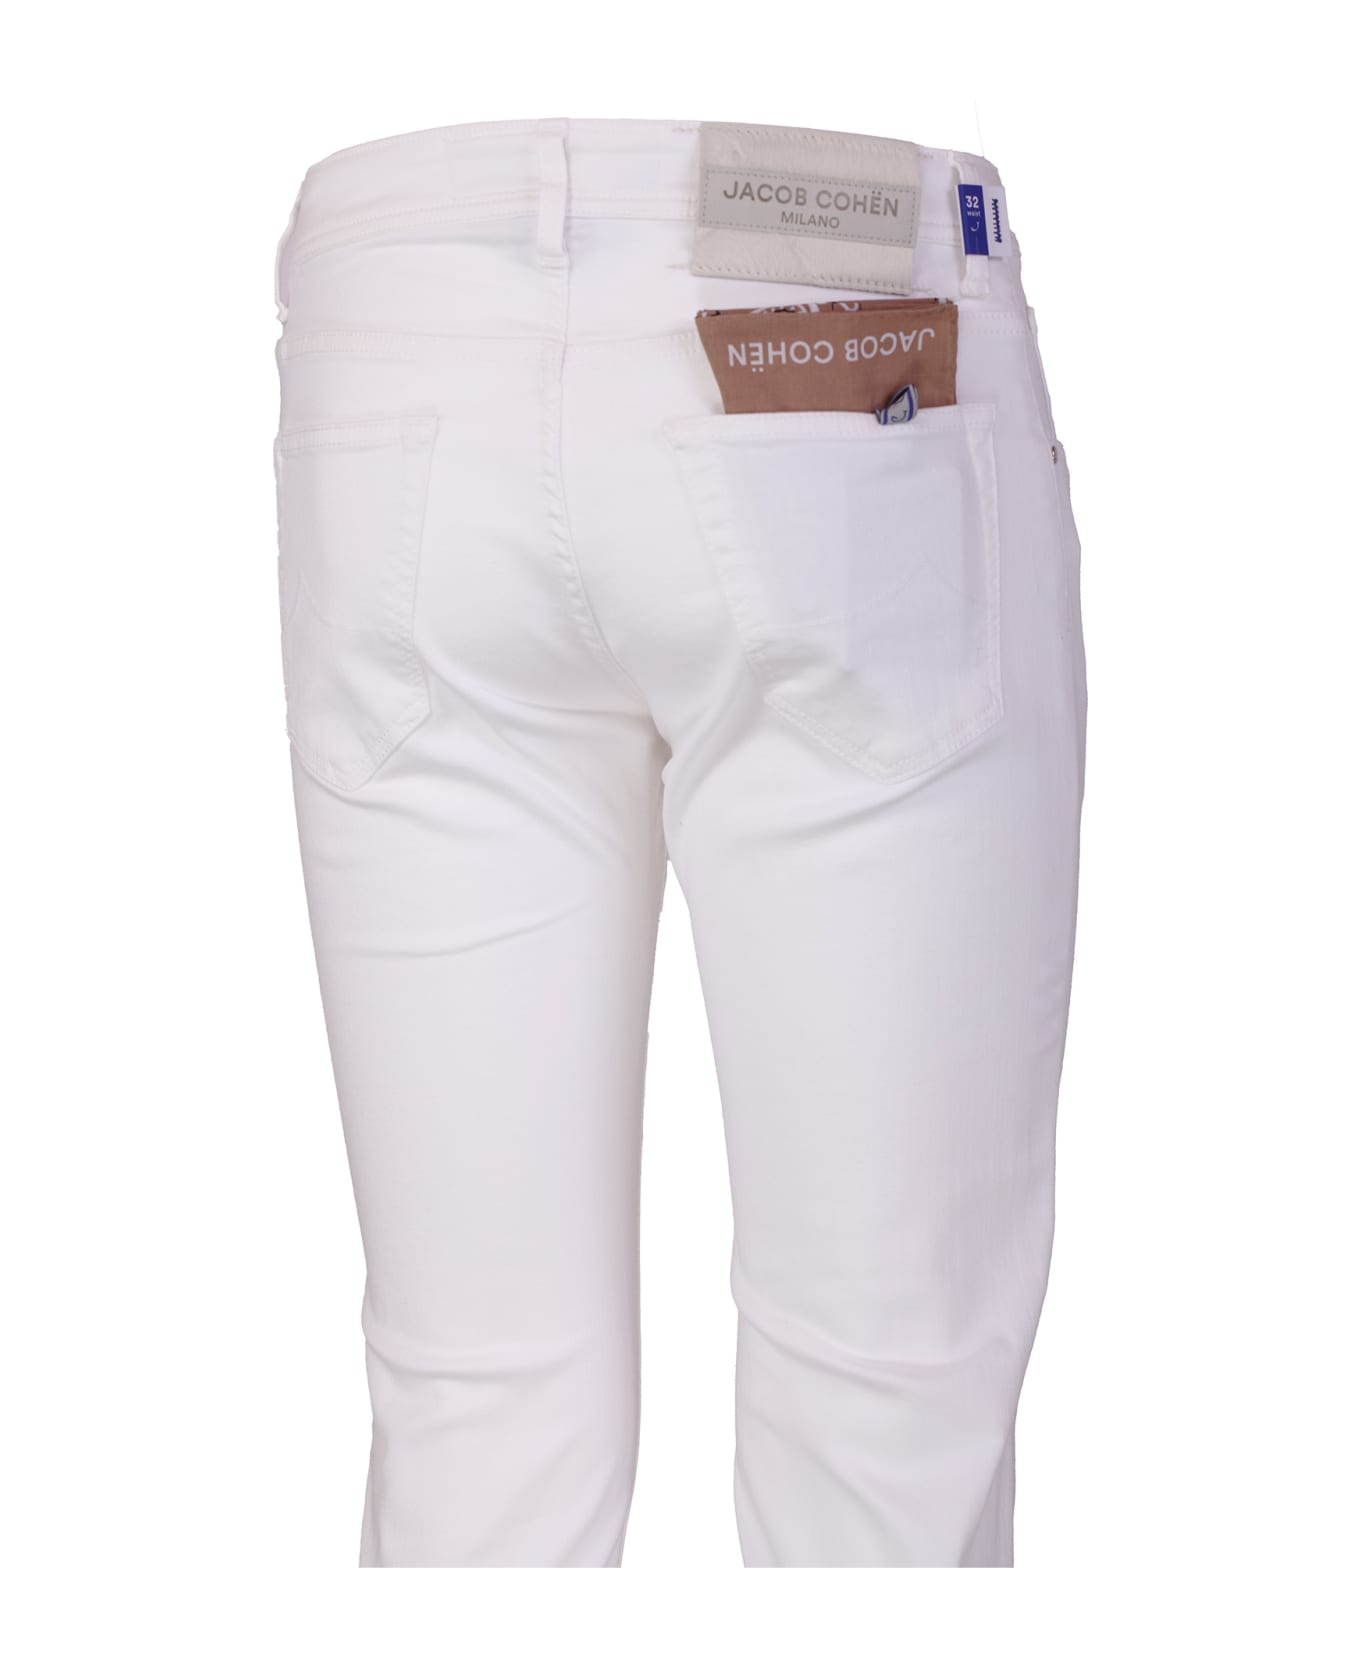 Jacob Cohen Jeans White - White ボトムス